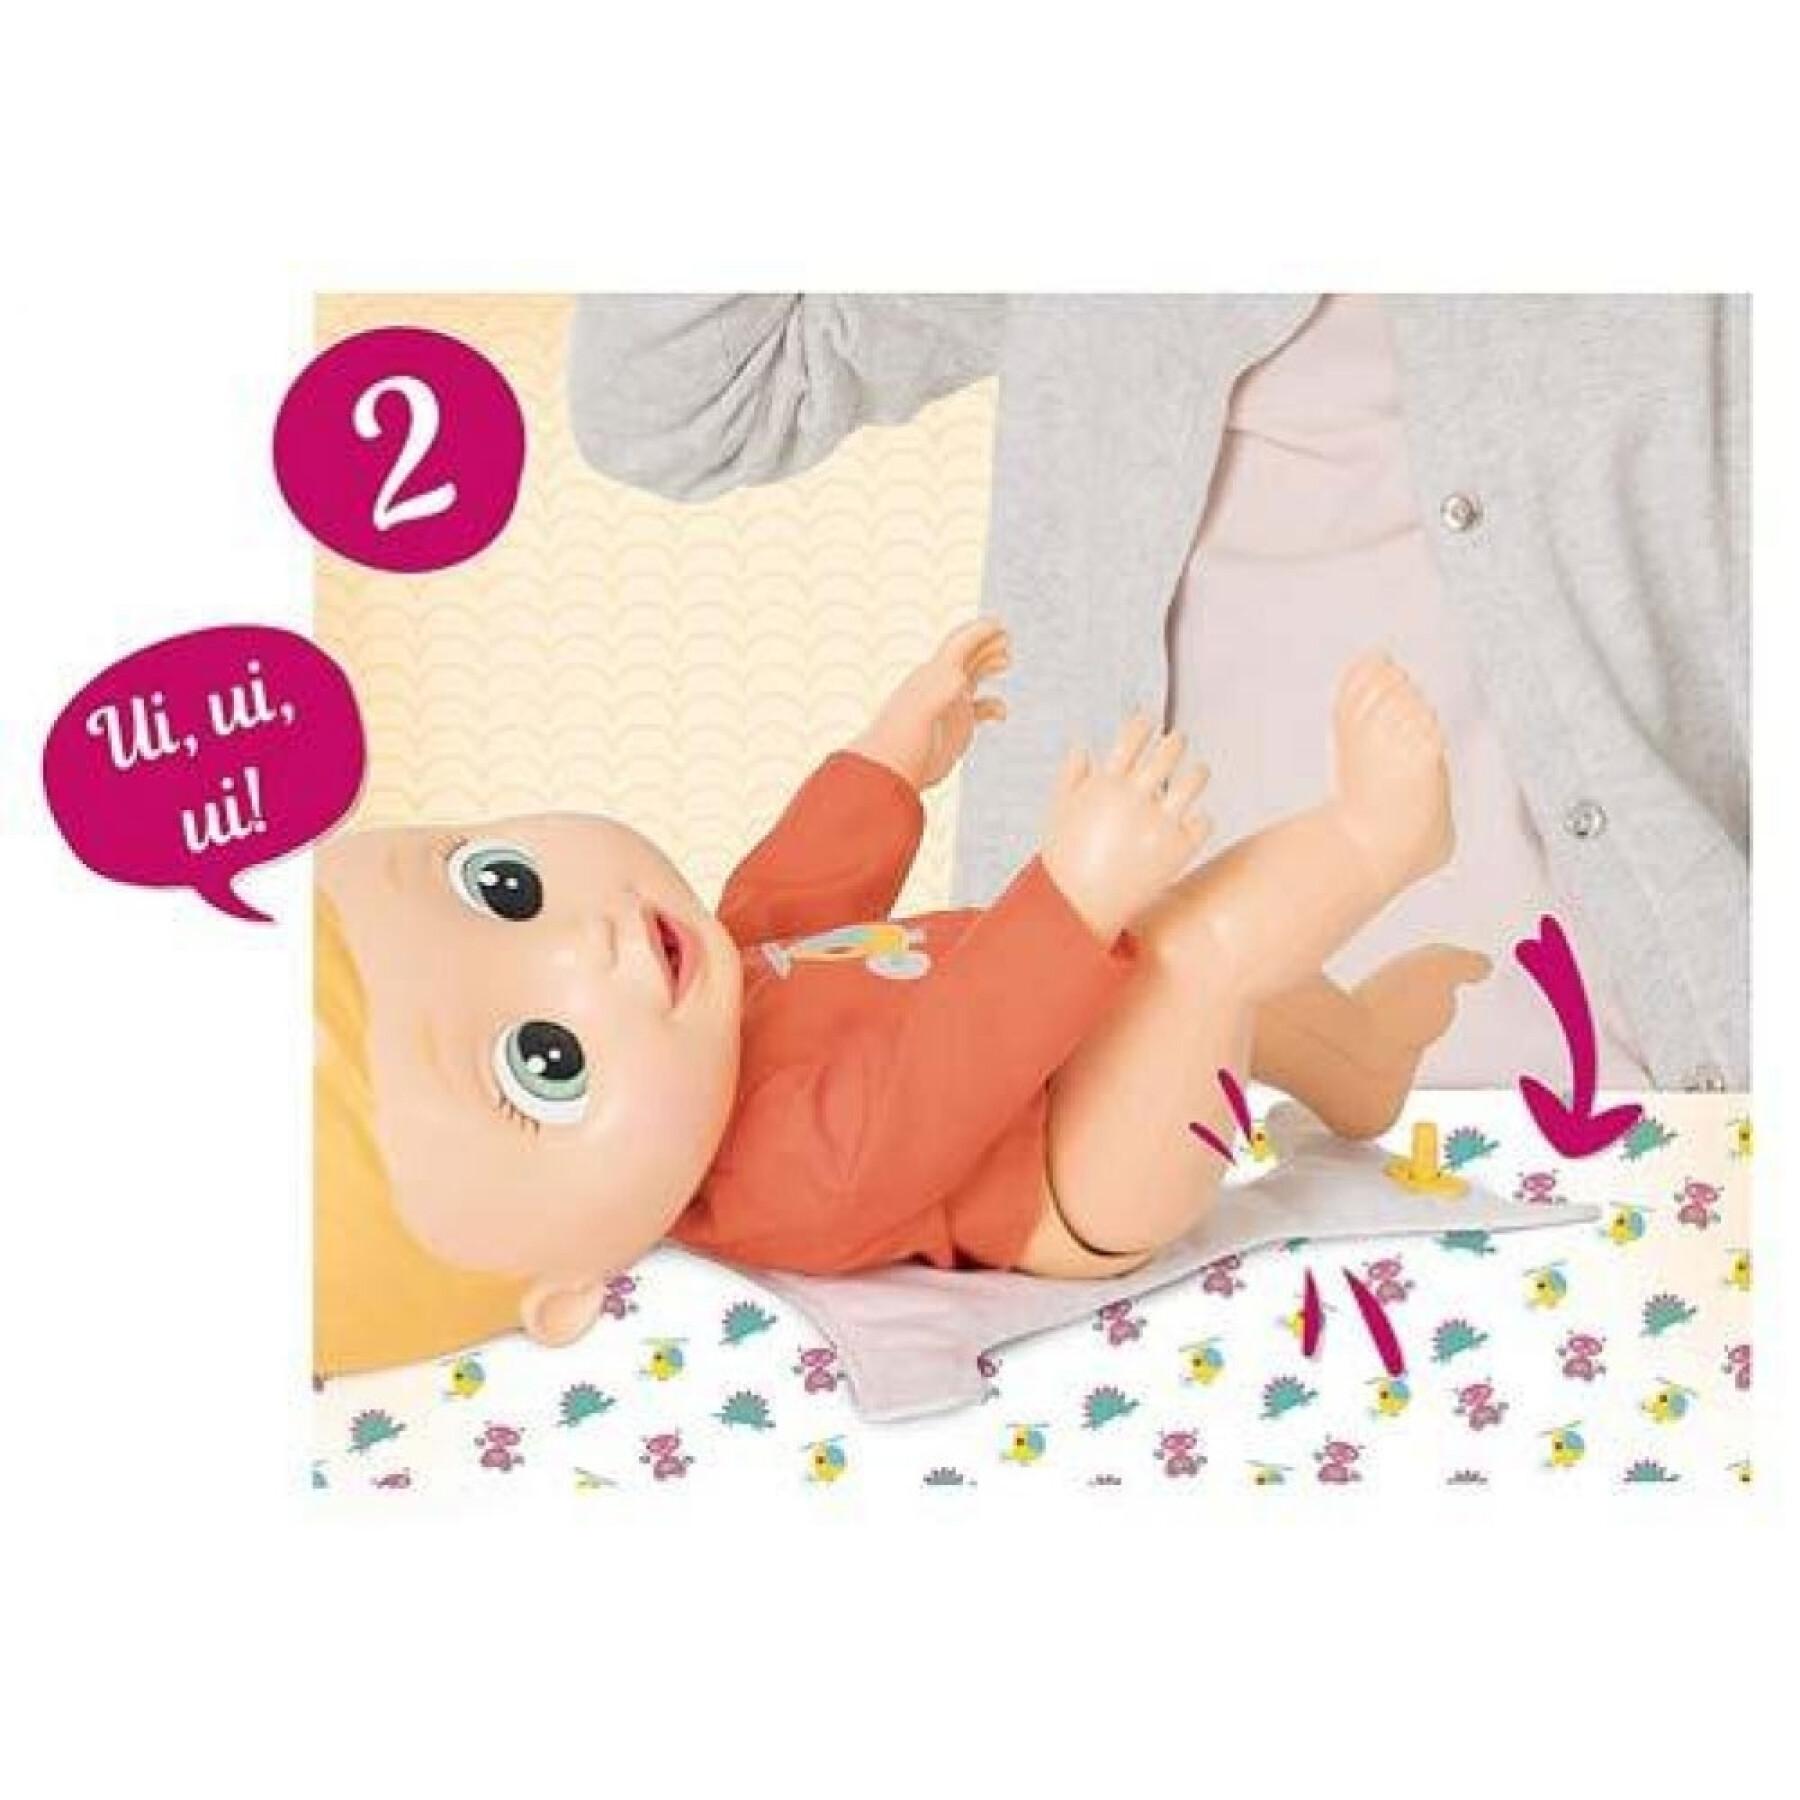 Petite poupée qui fait pipi - 3 modèles IMC Toys 30 cm